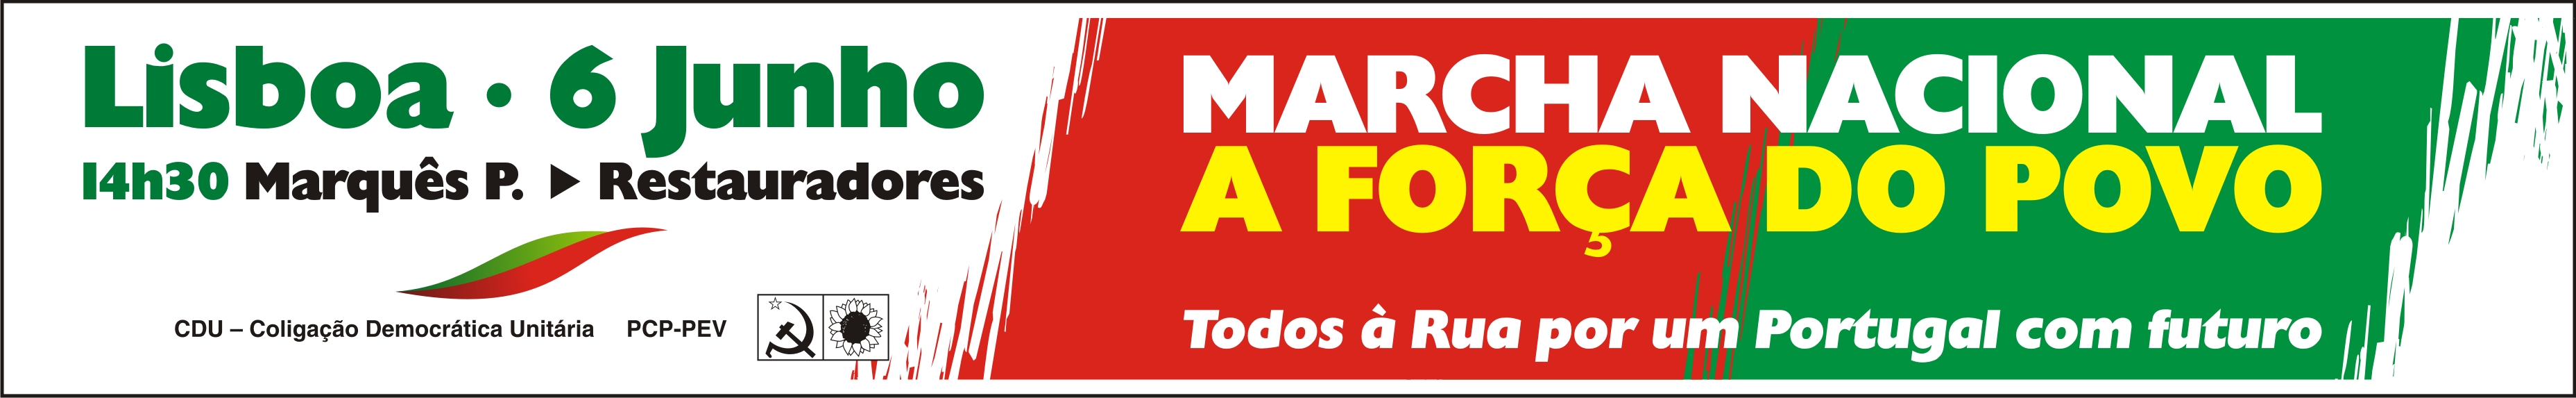 Banner Marcha Nacional